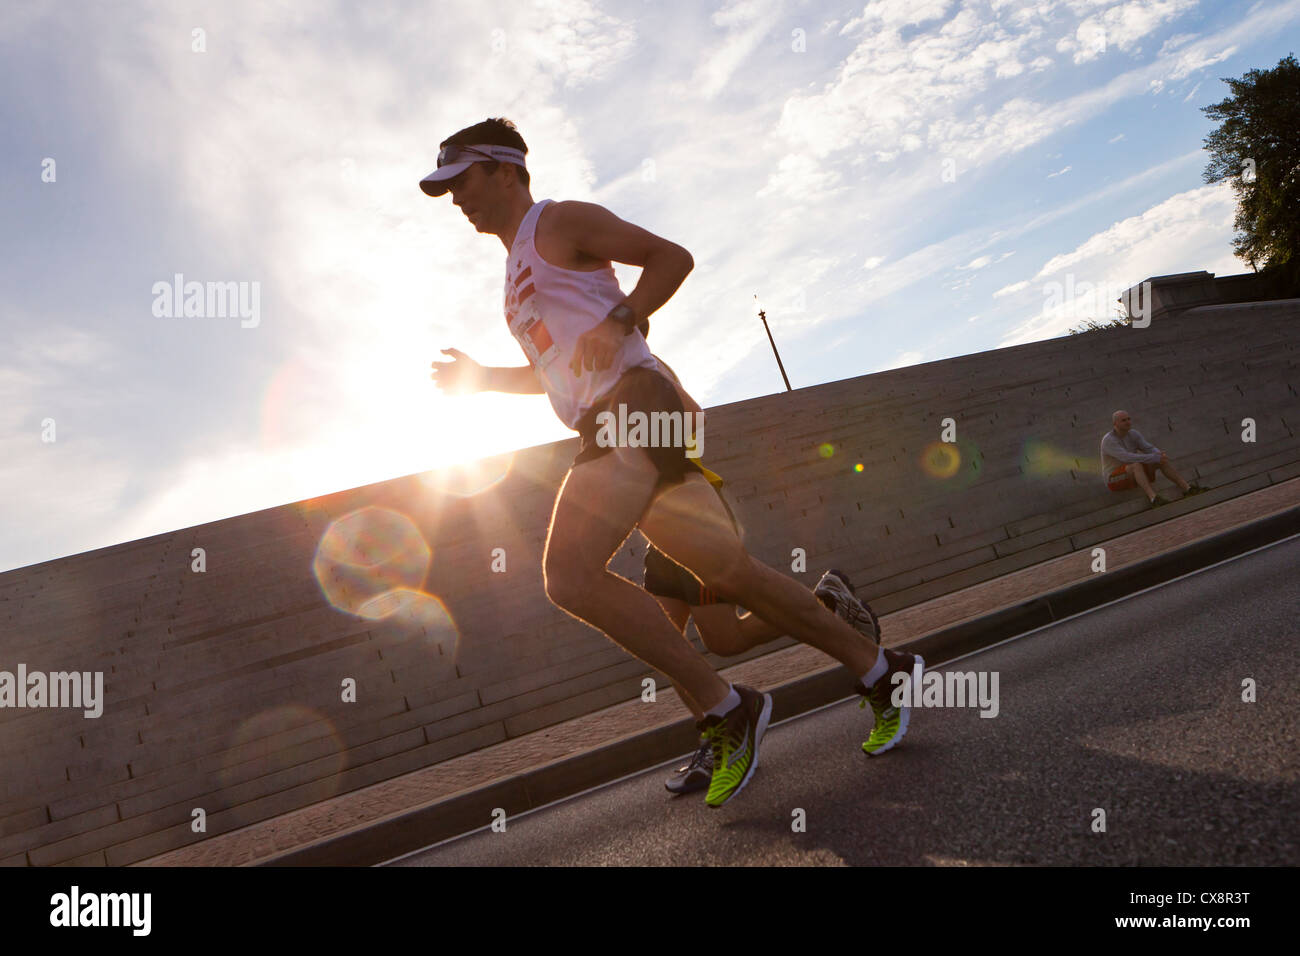 Marathon race runner Stock Photo